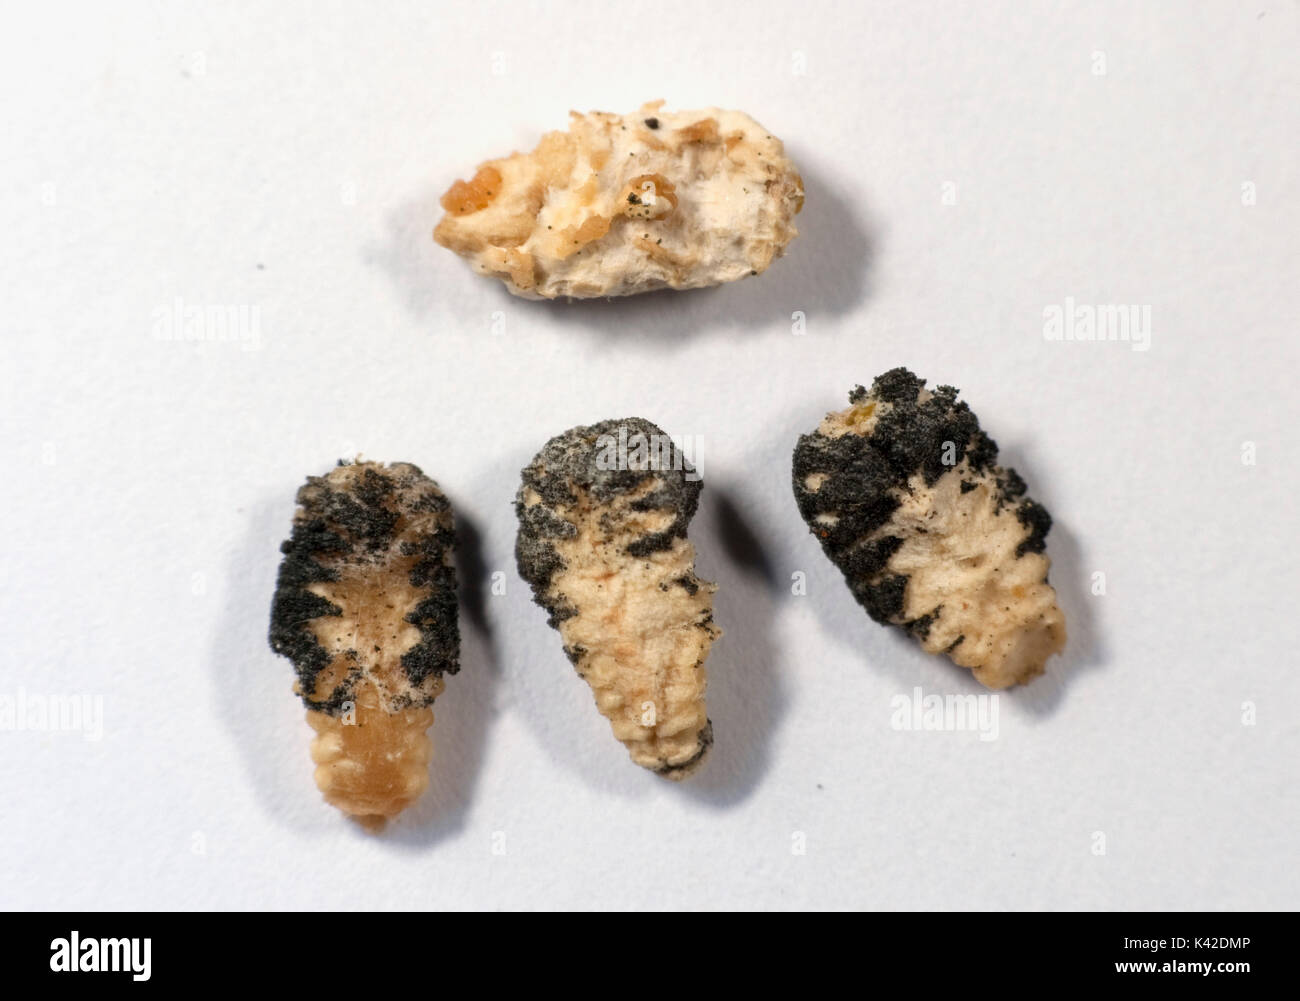 Larves mortes montrant la maladie du couvain sacciforme, abeille, Apis mellifera, Kent UK, affecte les larves avant de franchir une des nymphes, larves touchés changement de poire Banque D'Images